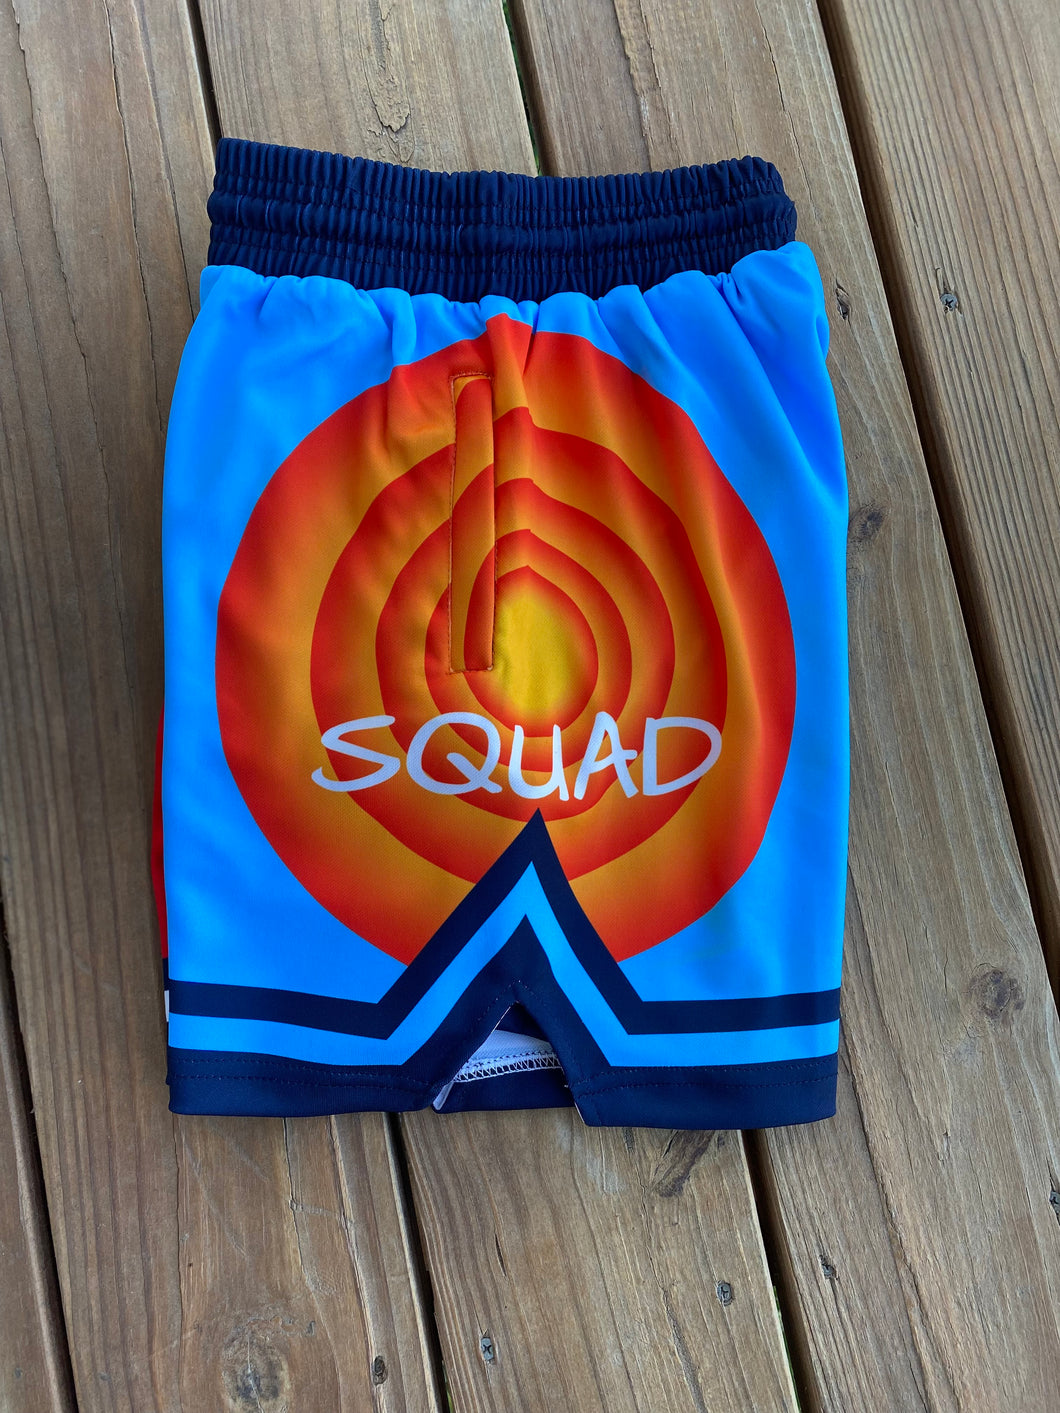 A3 “Squad” Shorts